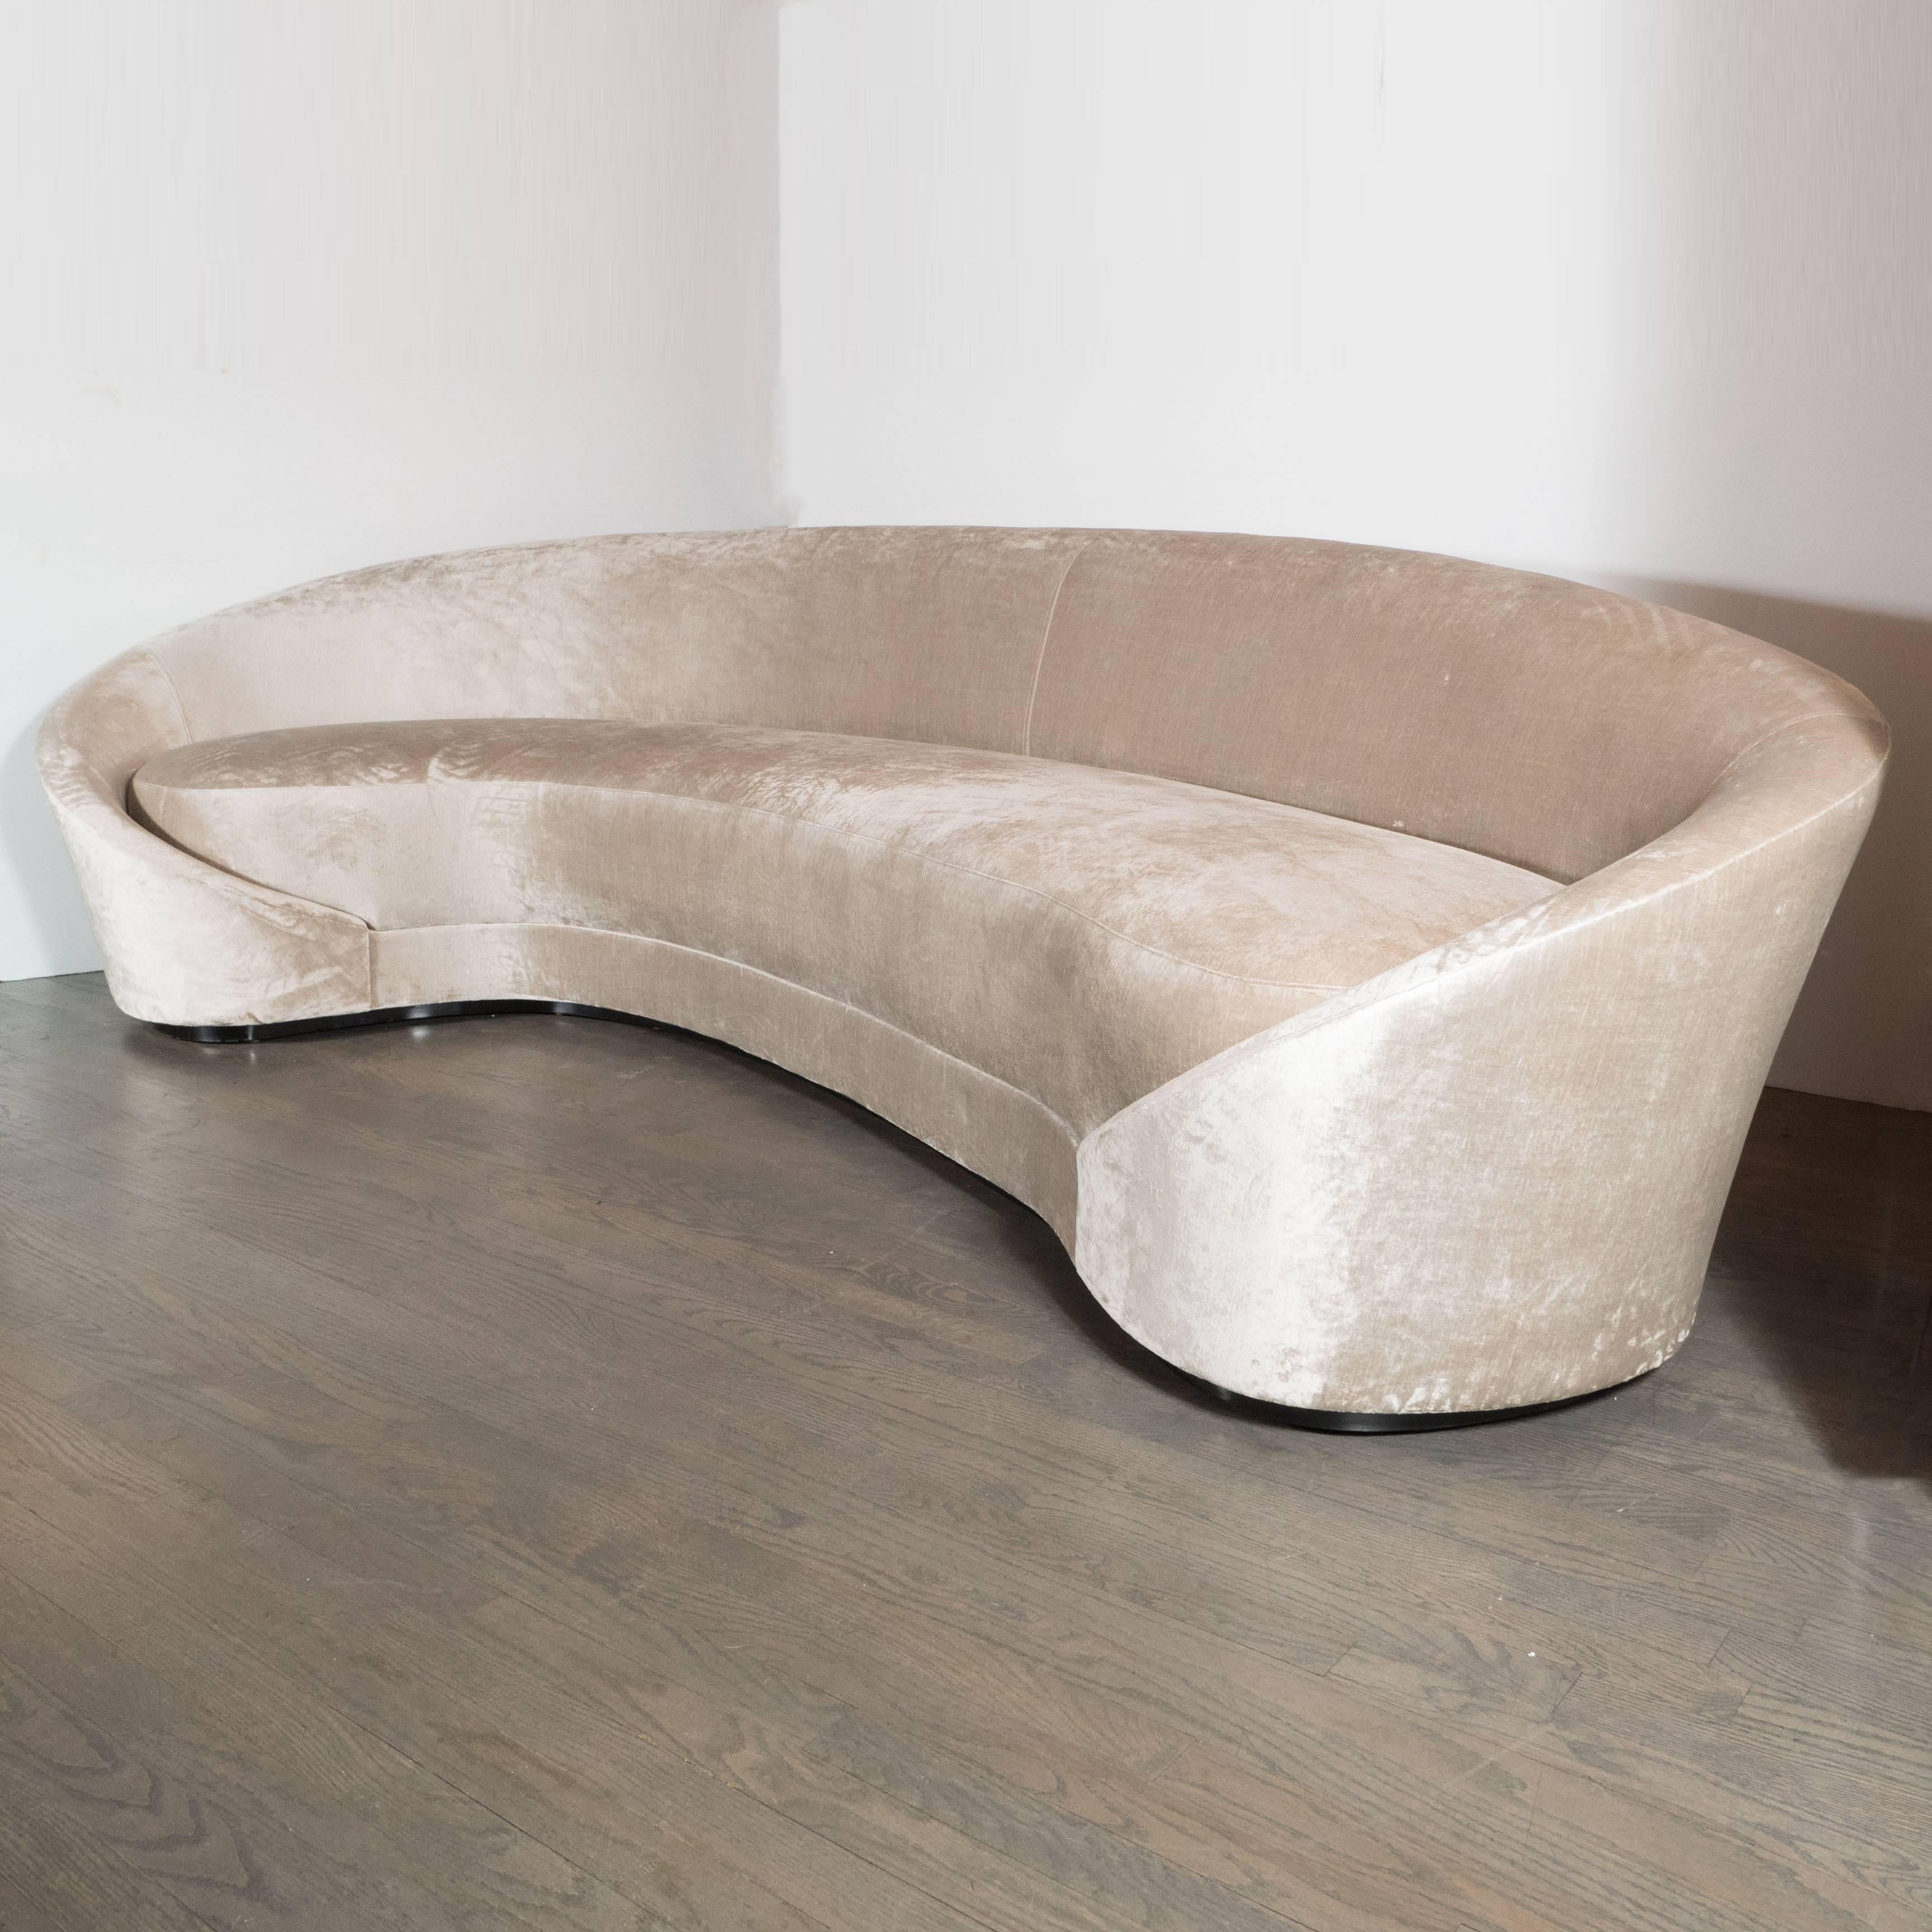 wraparound sofa